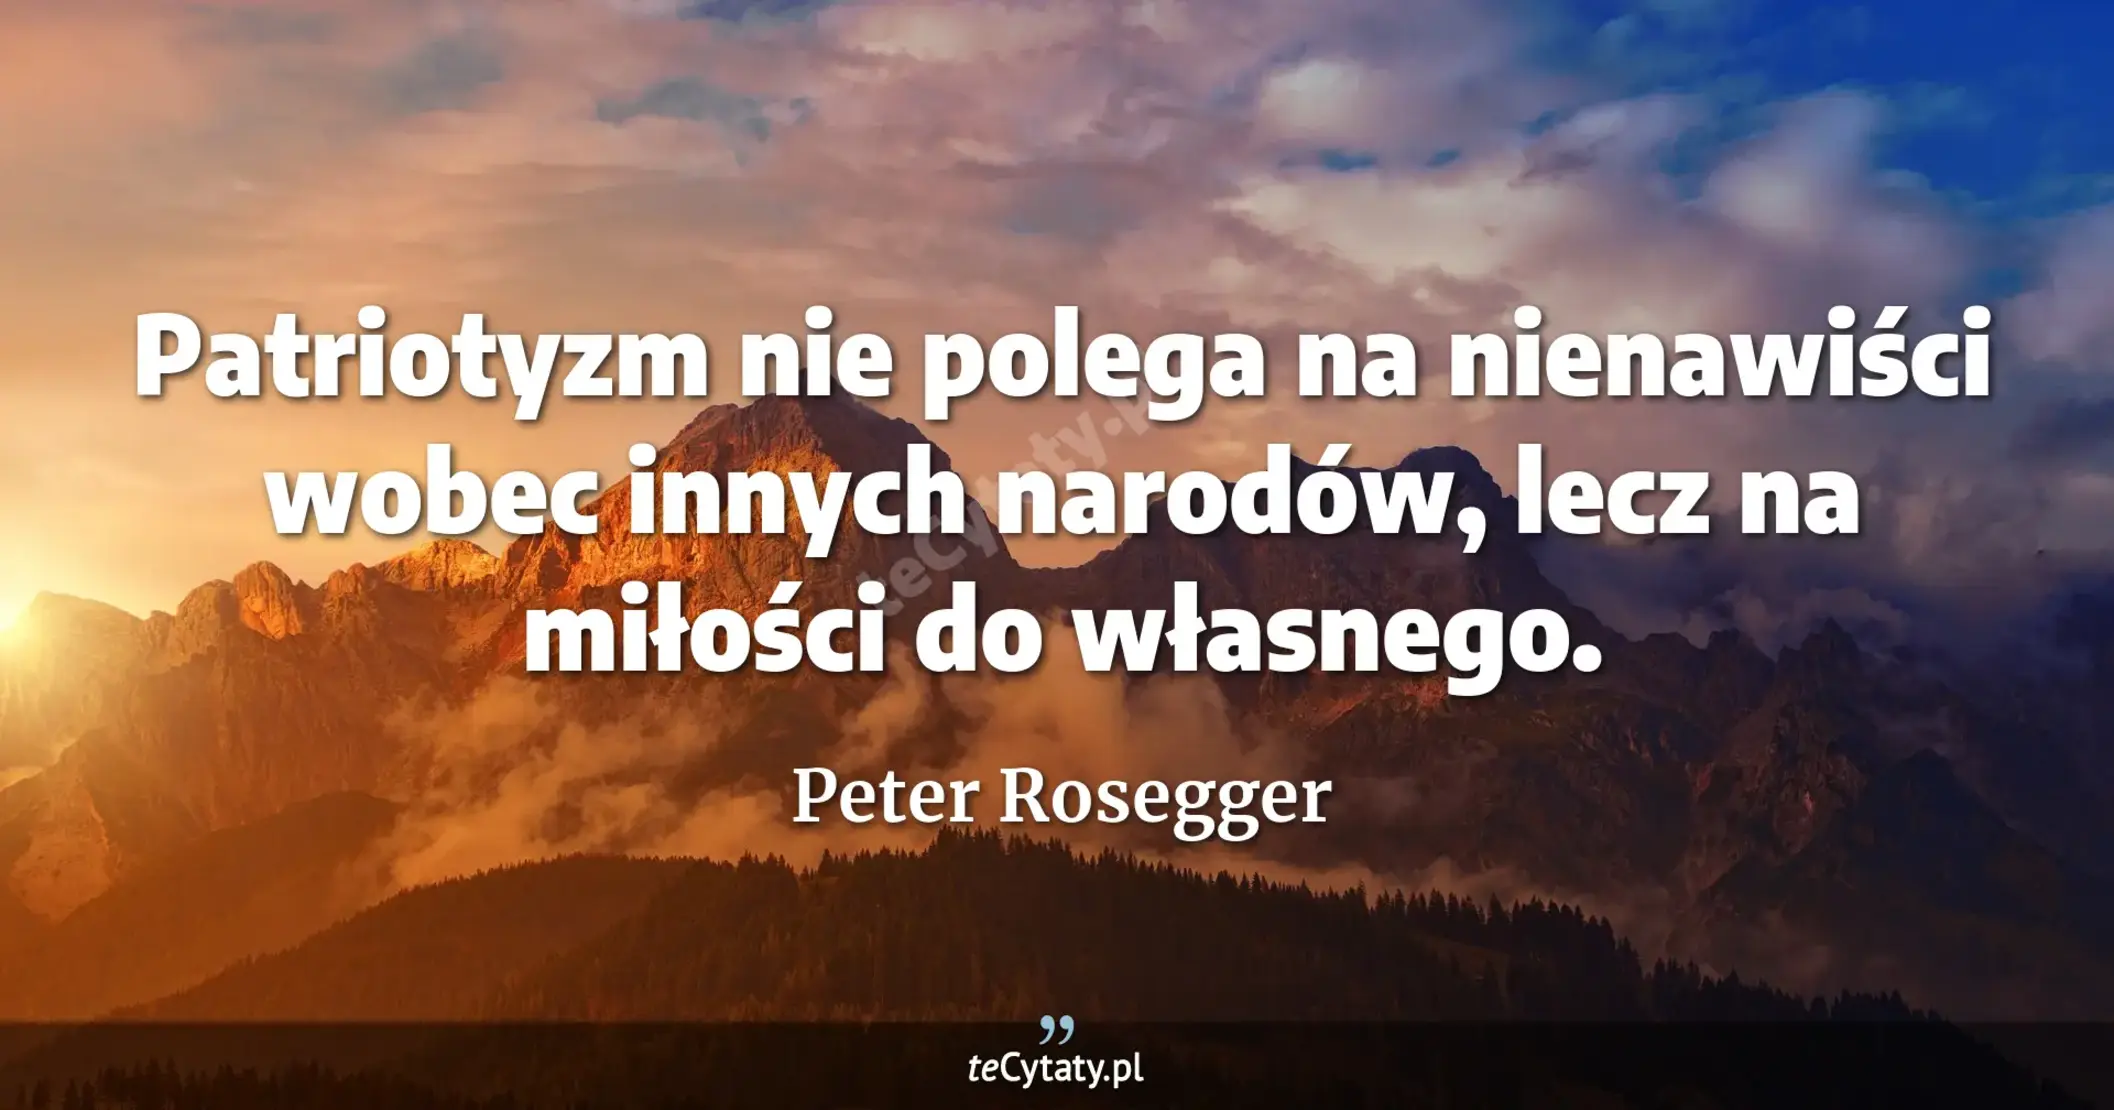 Patriotyzm nie polega na nienawiści wobec innych narodów, lecz na miłości do własnego. - Peter Rosegger